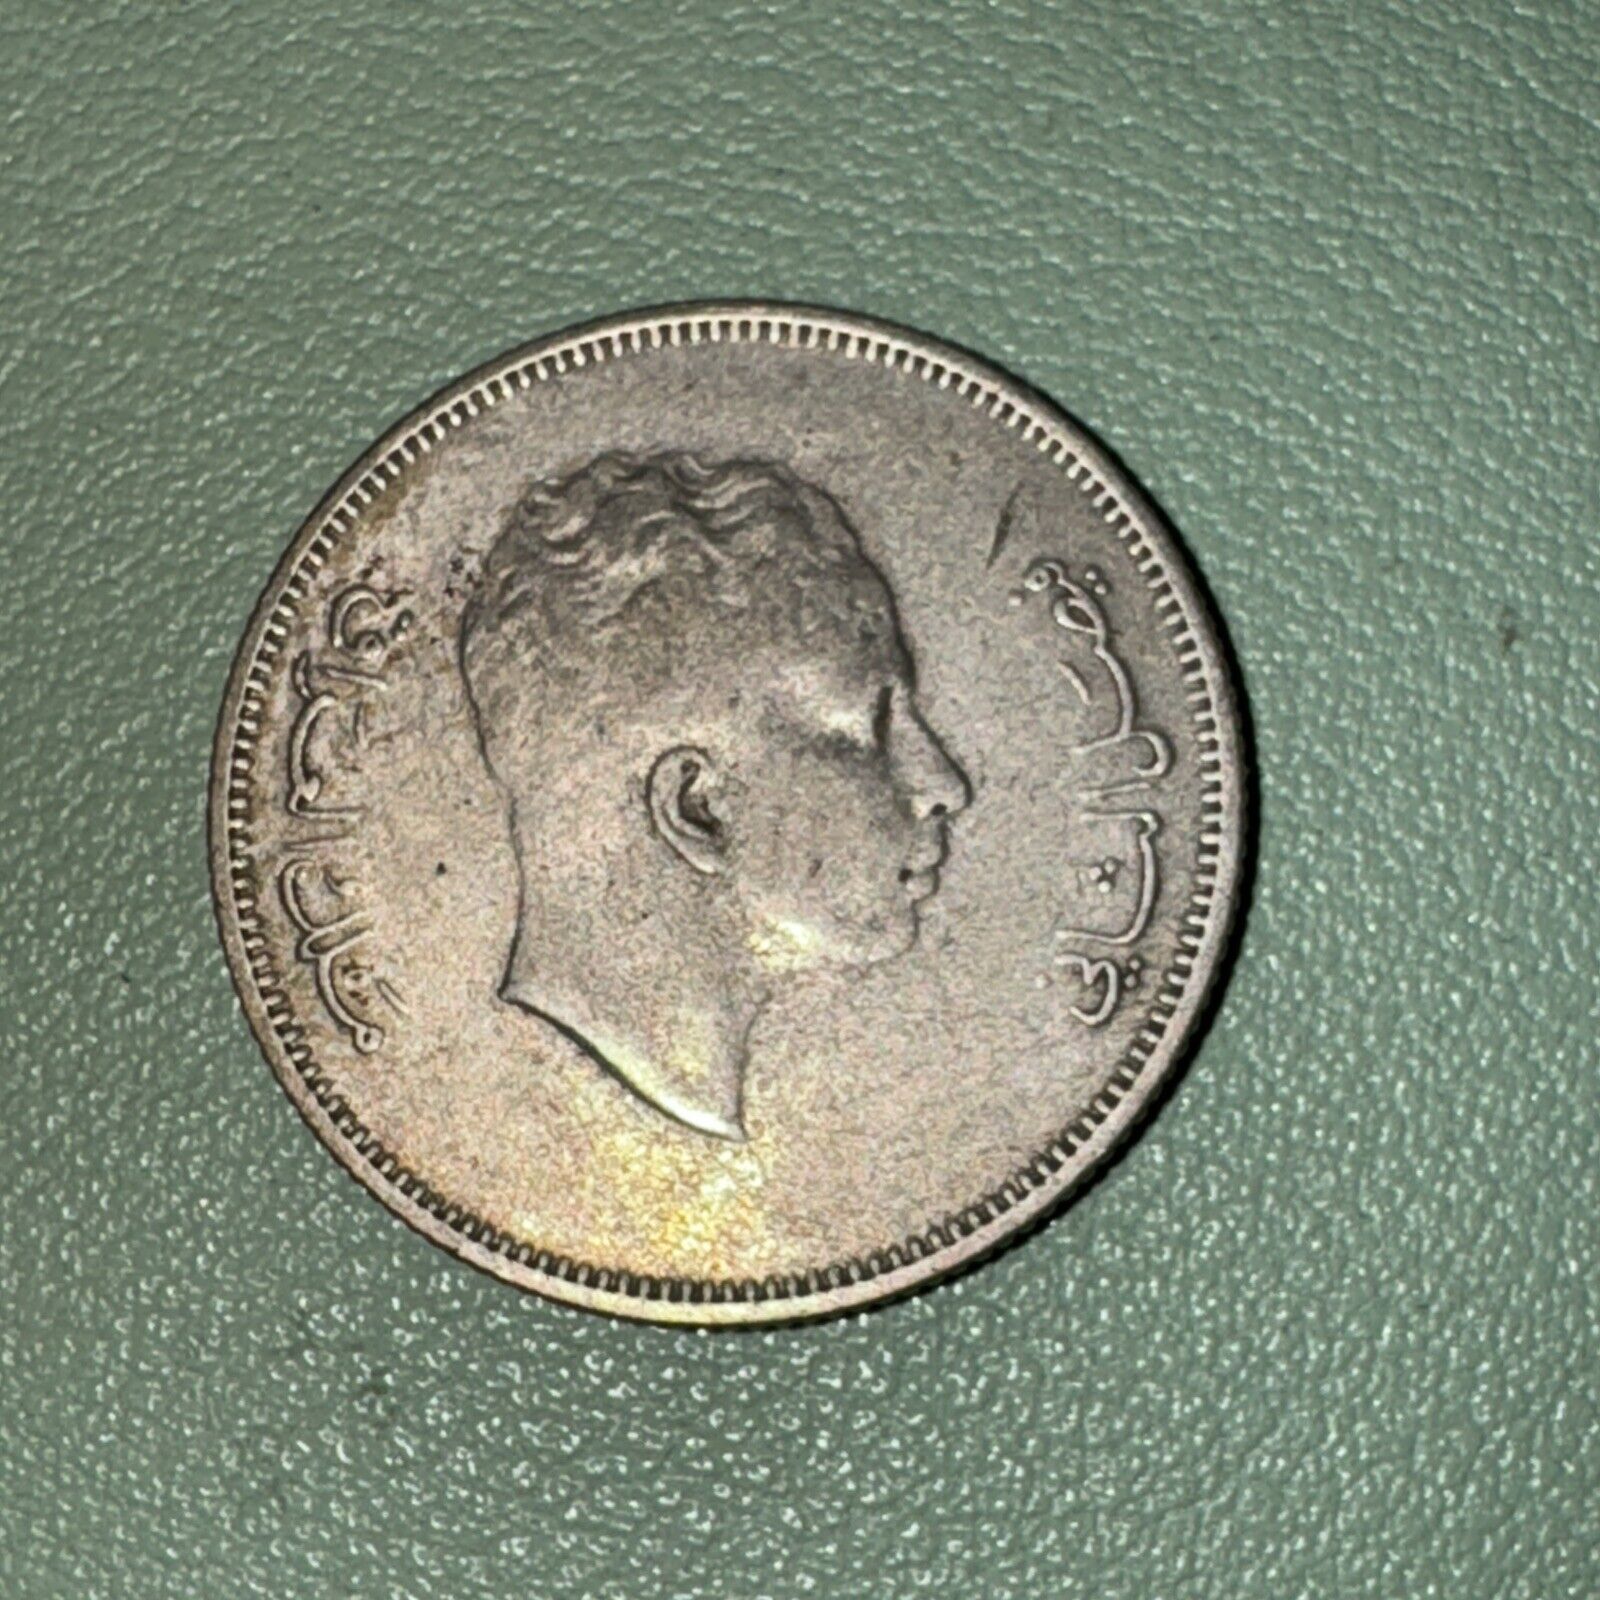 Iraq 50 Fils 1955 - World Silver  Coin VF King Faisal II